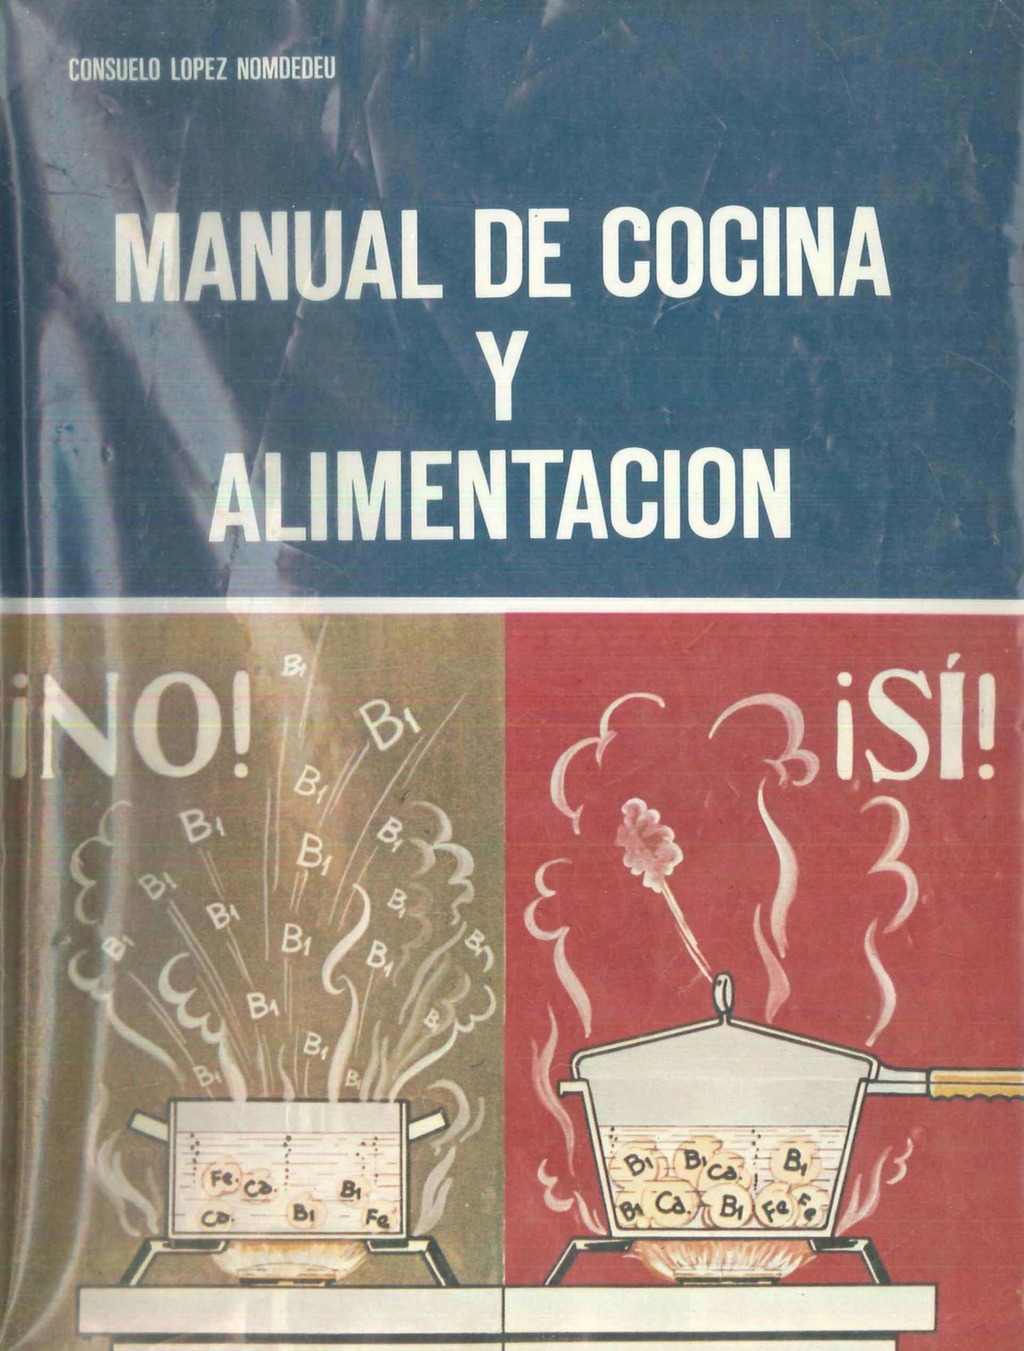 manual-cocina-alimentacion-nomdedeu-1971